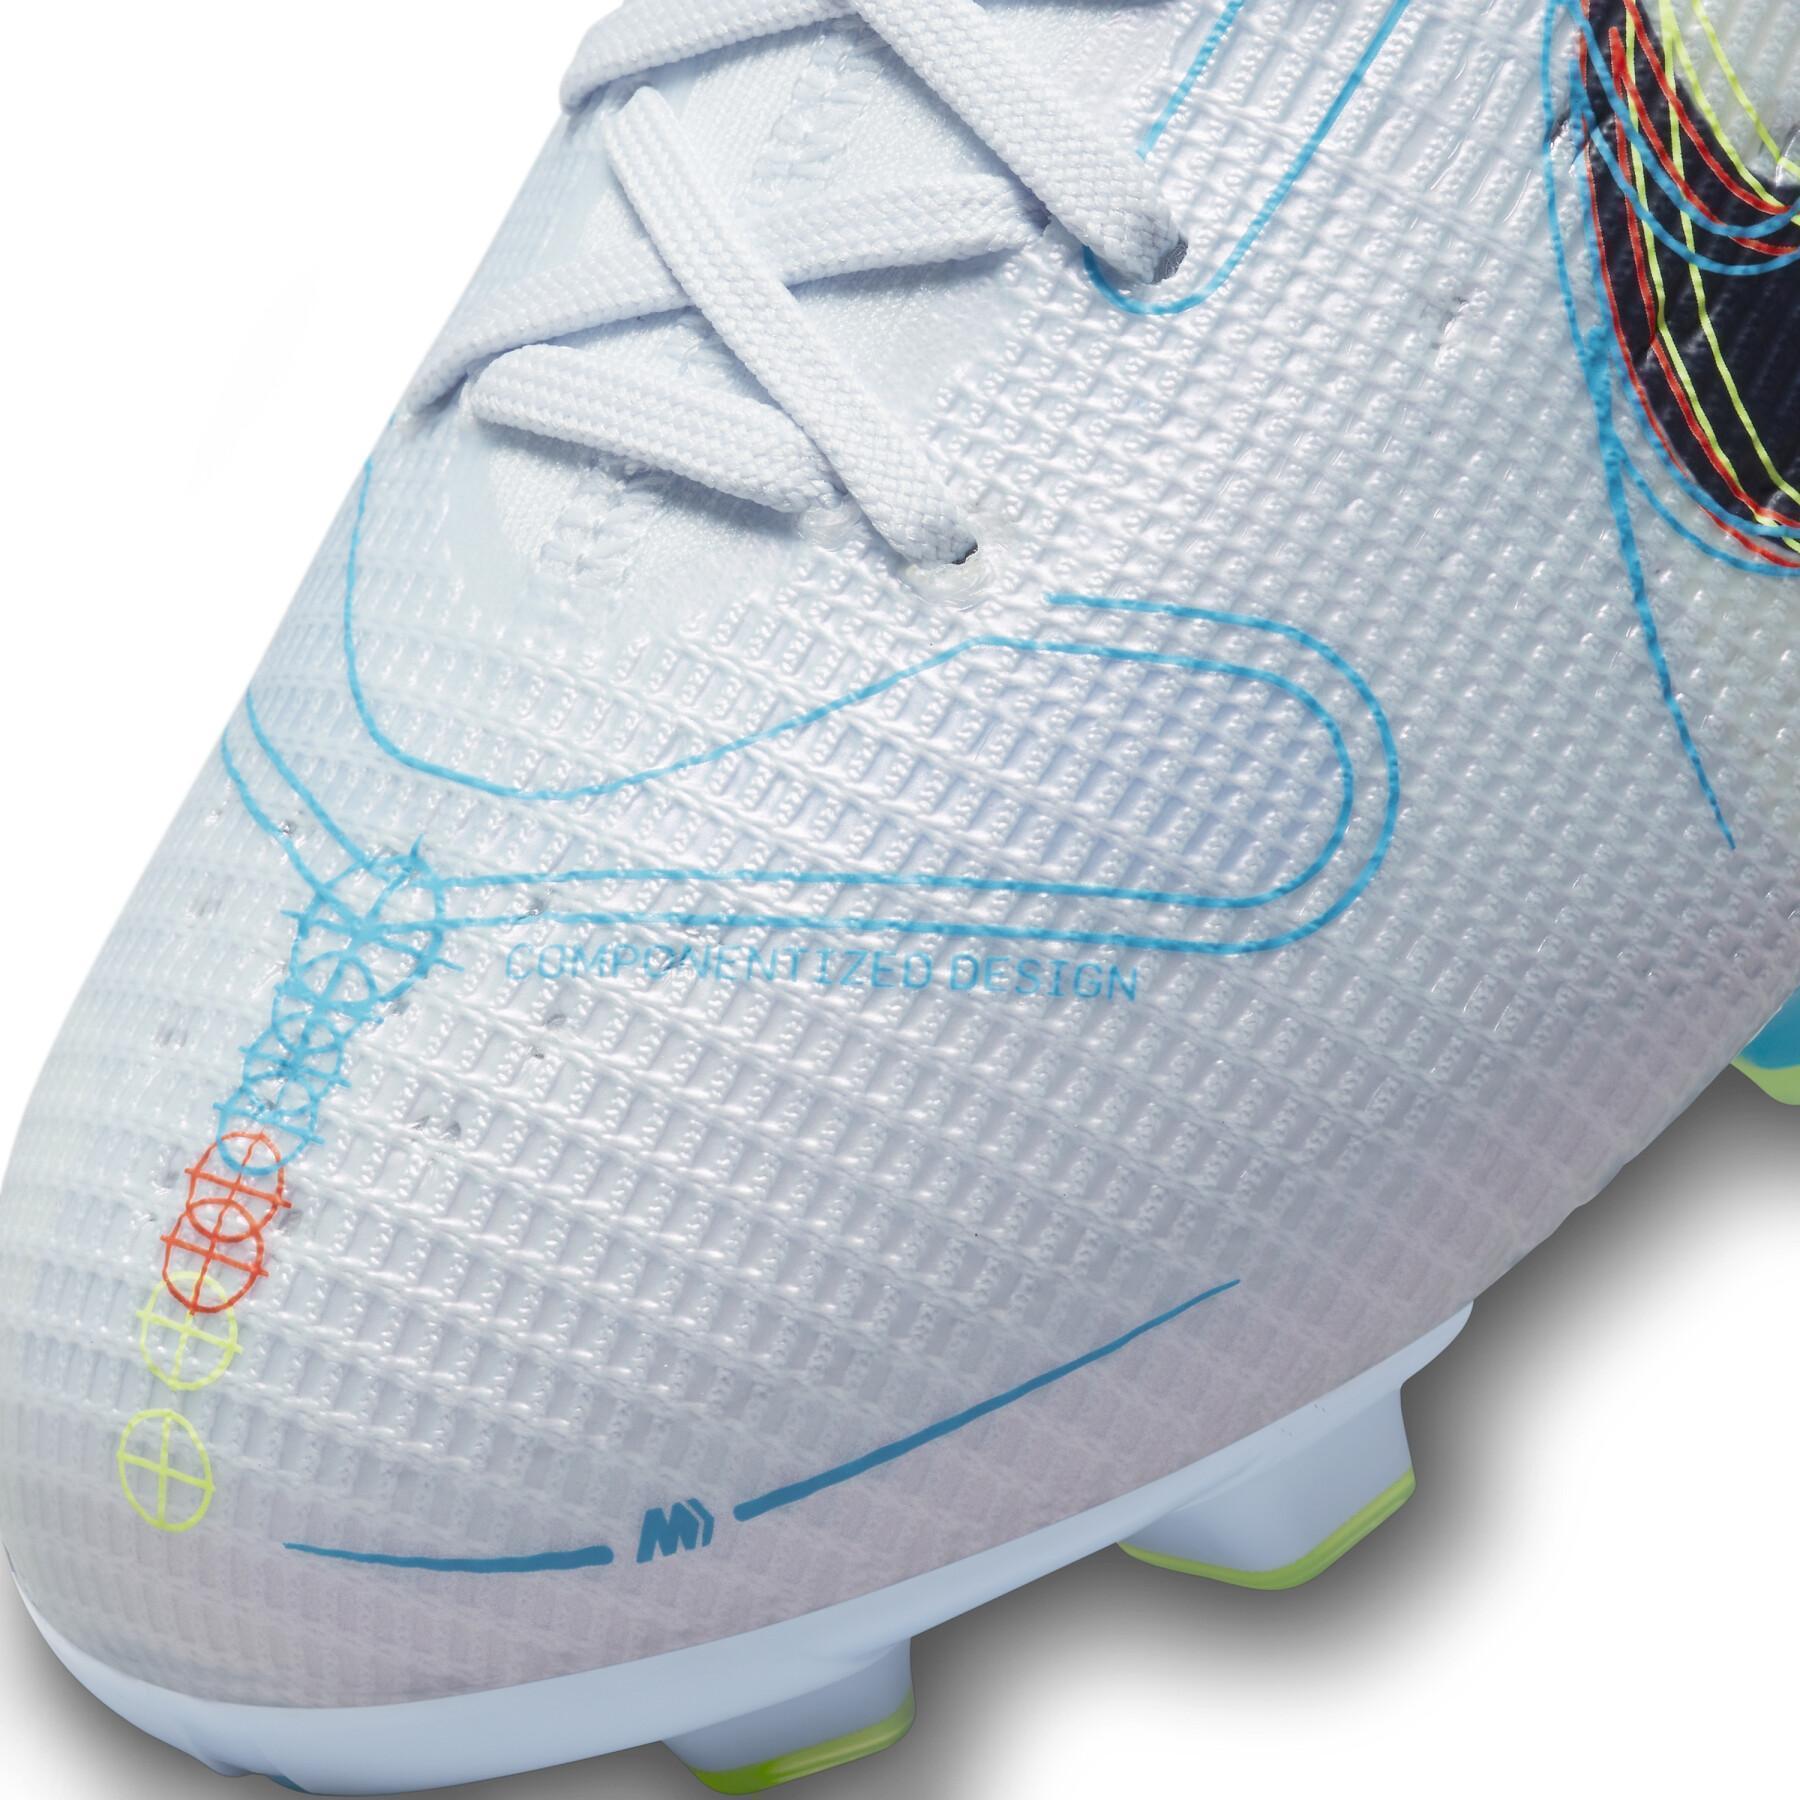 Scarpe da calcio per bambini Nike Mercurial Superfly 8 Pro - Progress Pack